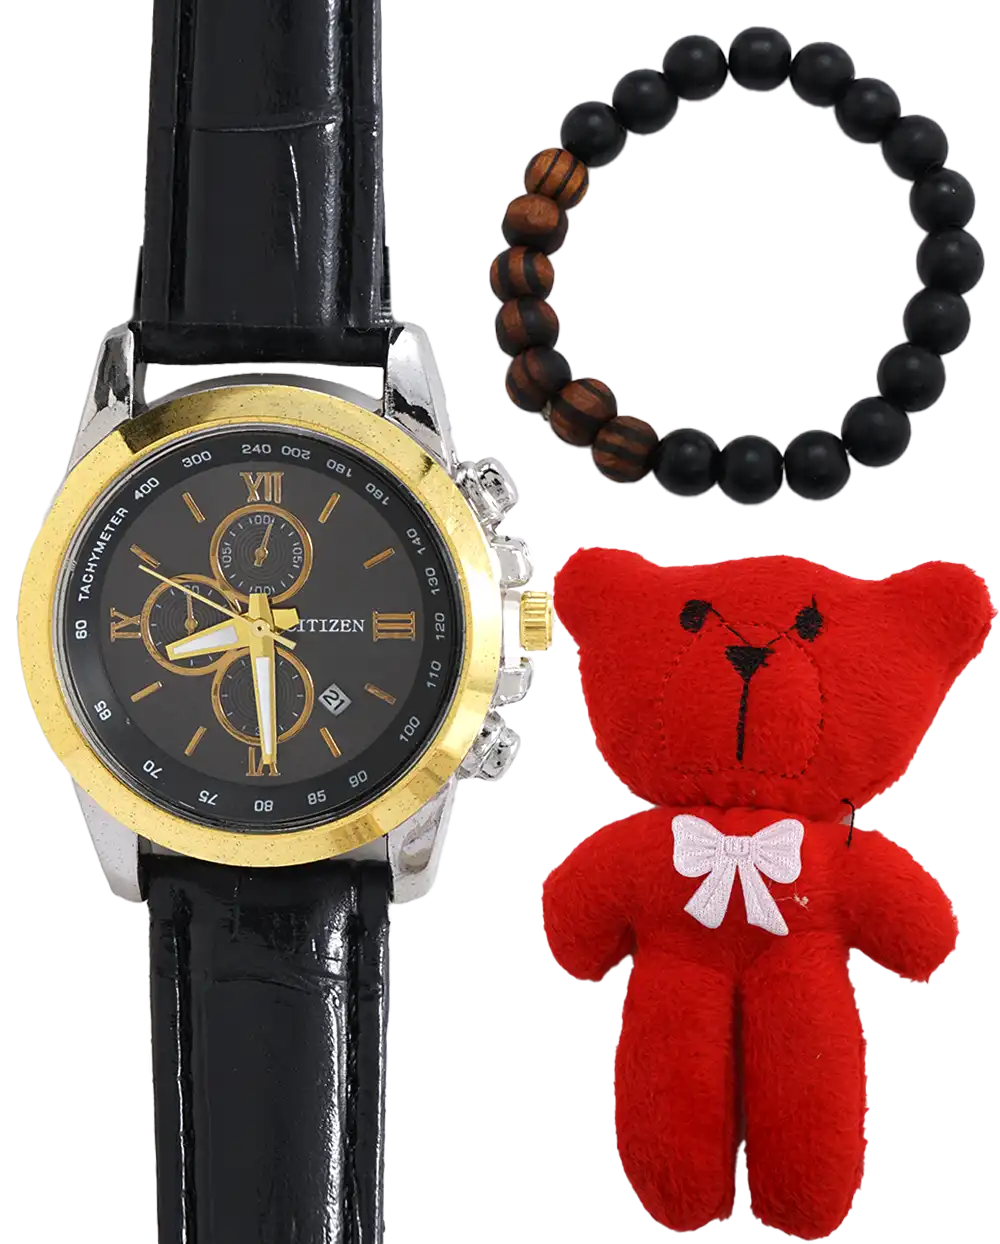 خرید پک هدیه ساعت دستبند و عروسک زنانه با بهترین قیمت همراه با جعبه ی مخصوص و ارسال رایگان به سراسر ایران درب منزل | پک مناسب هدیه ولنتاین زنانه